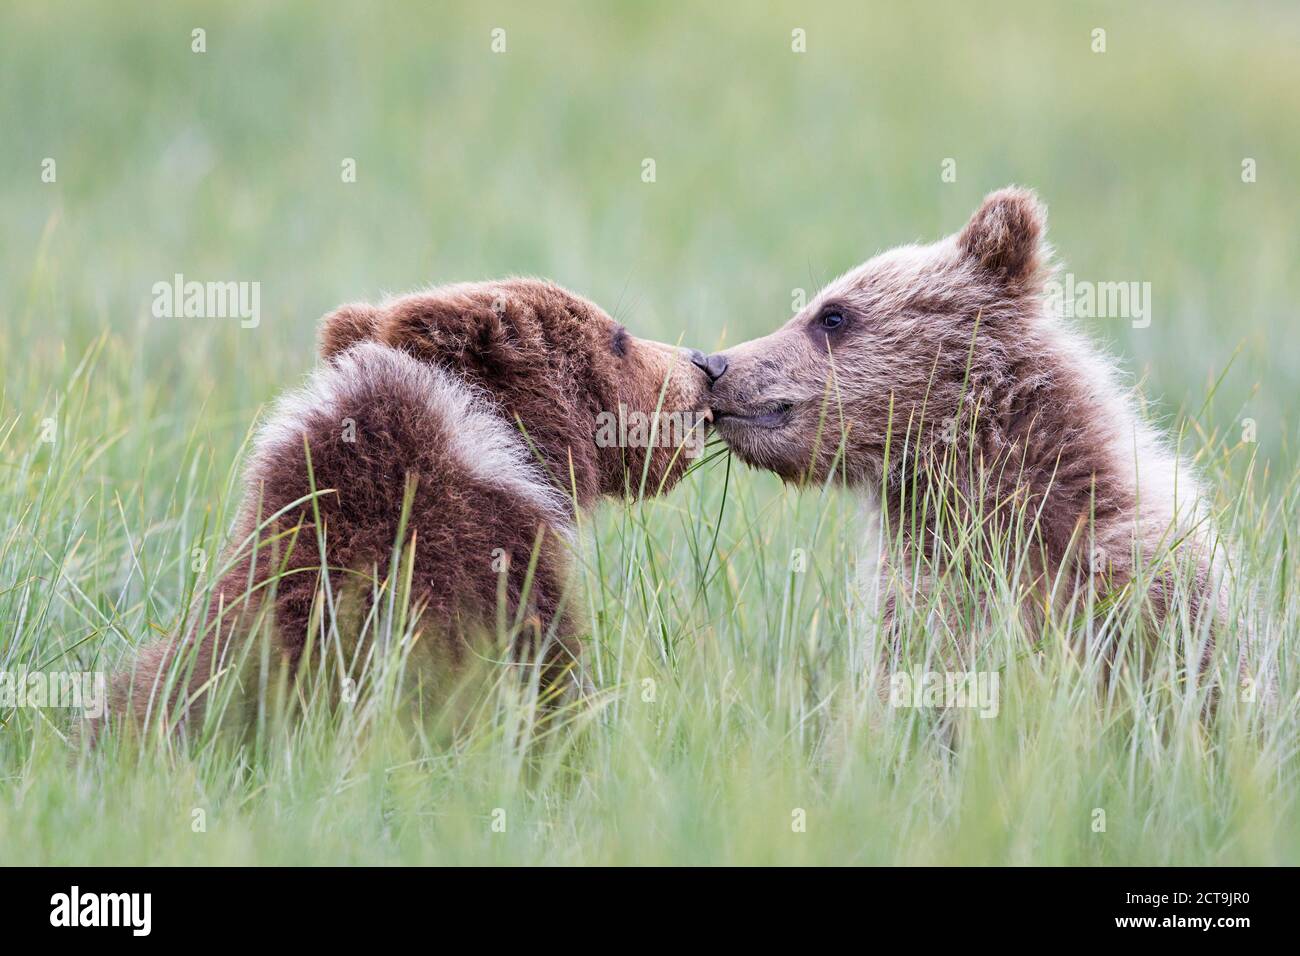 USA, Alaska, Lake Clark National Park and Preserve, Playing Brown bears (Ursus arctos), young animals Stock Photo